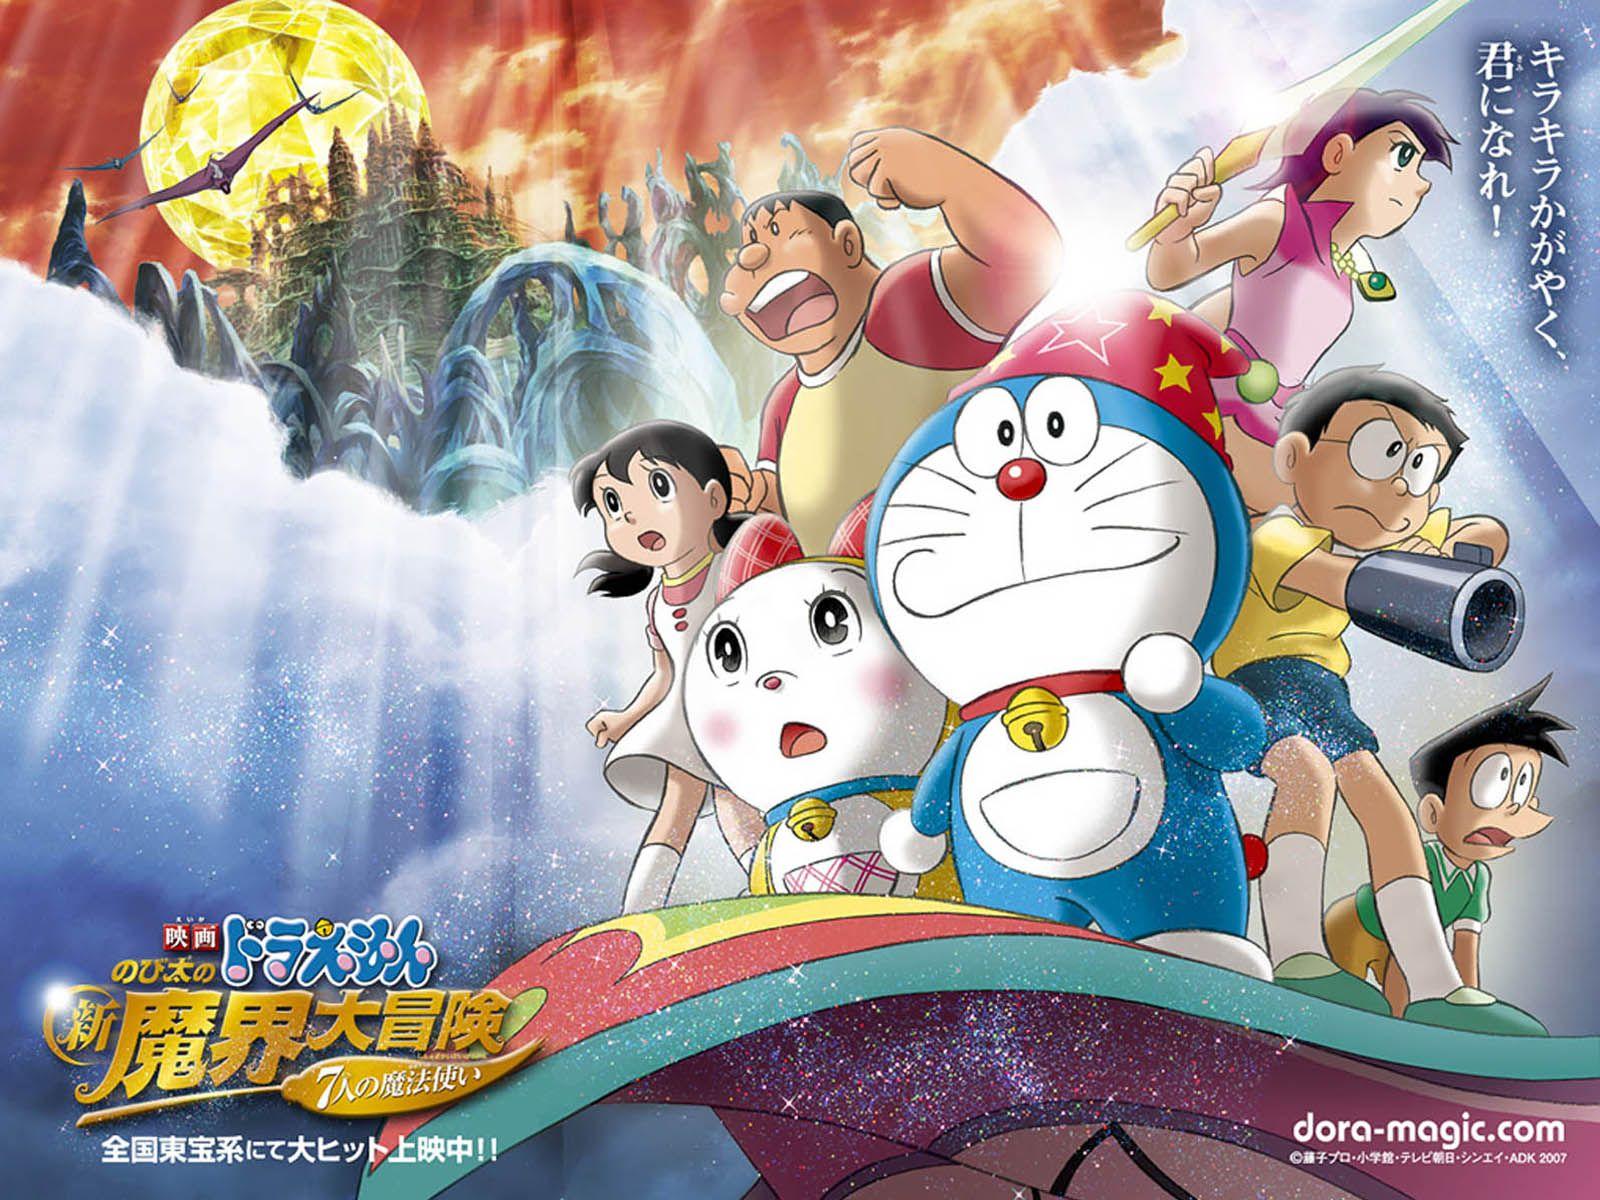 Who made Doraemon? - Quora